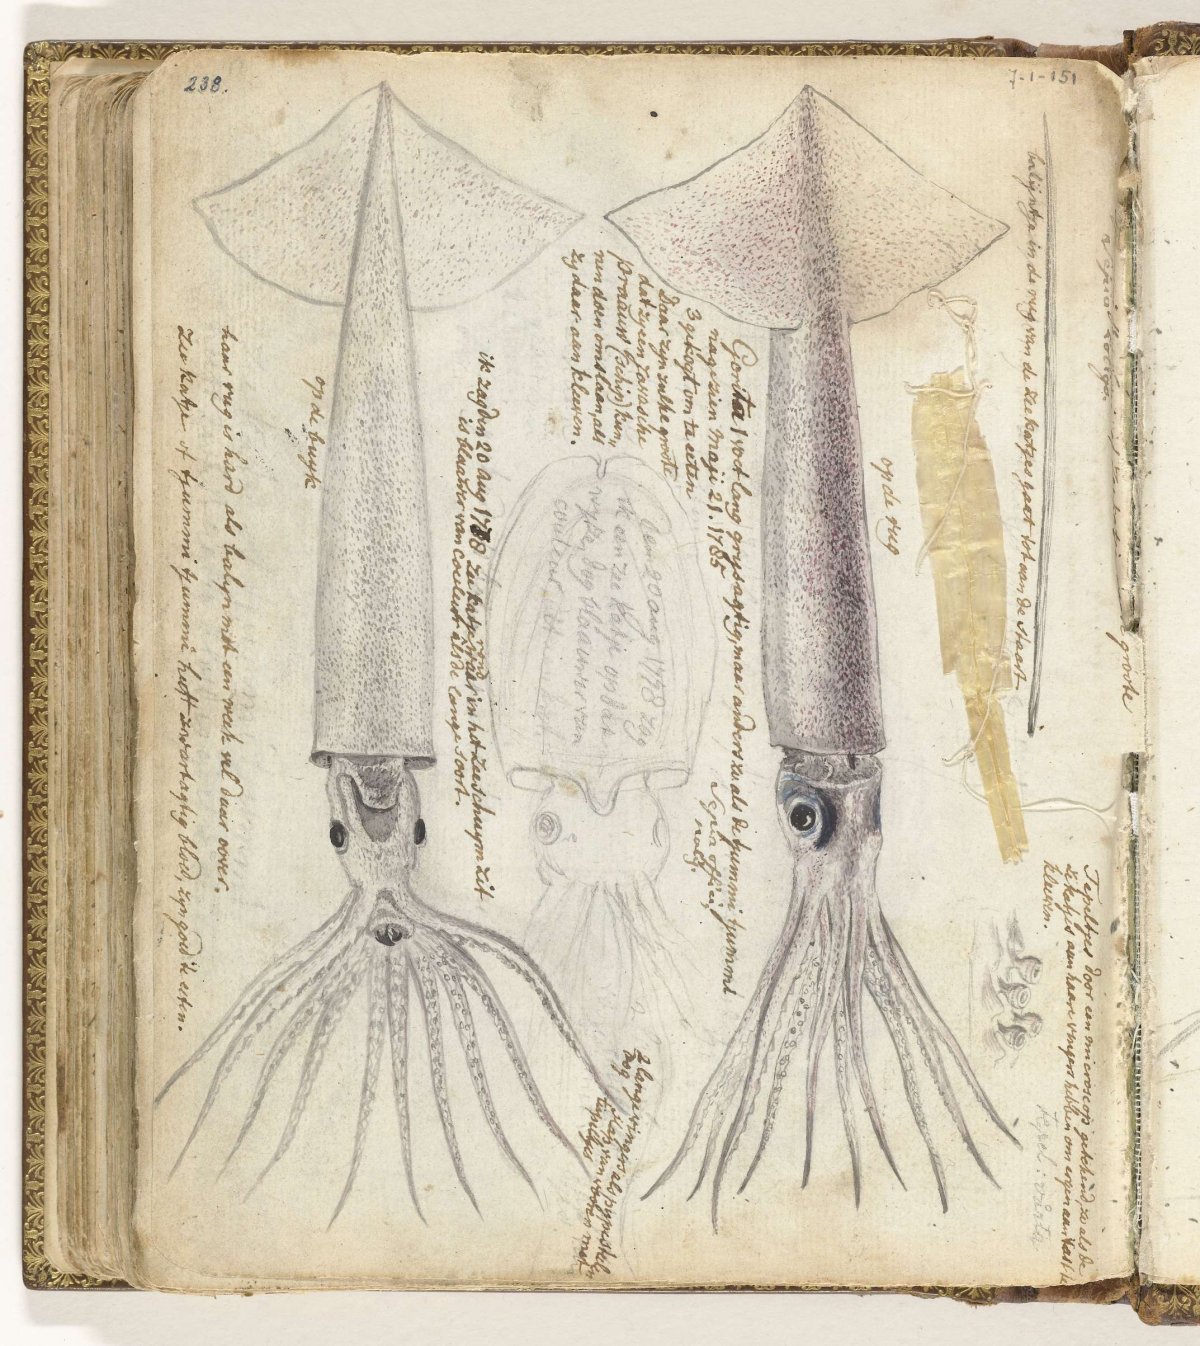 Cuttlefish and gorita, Jan Brandes, 1785